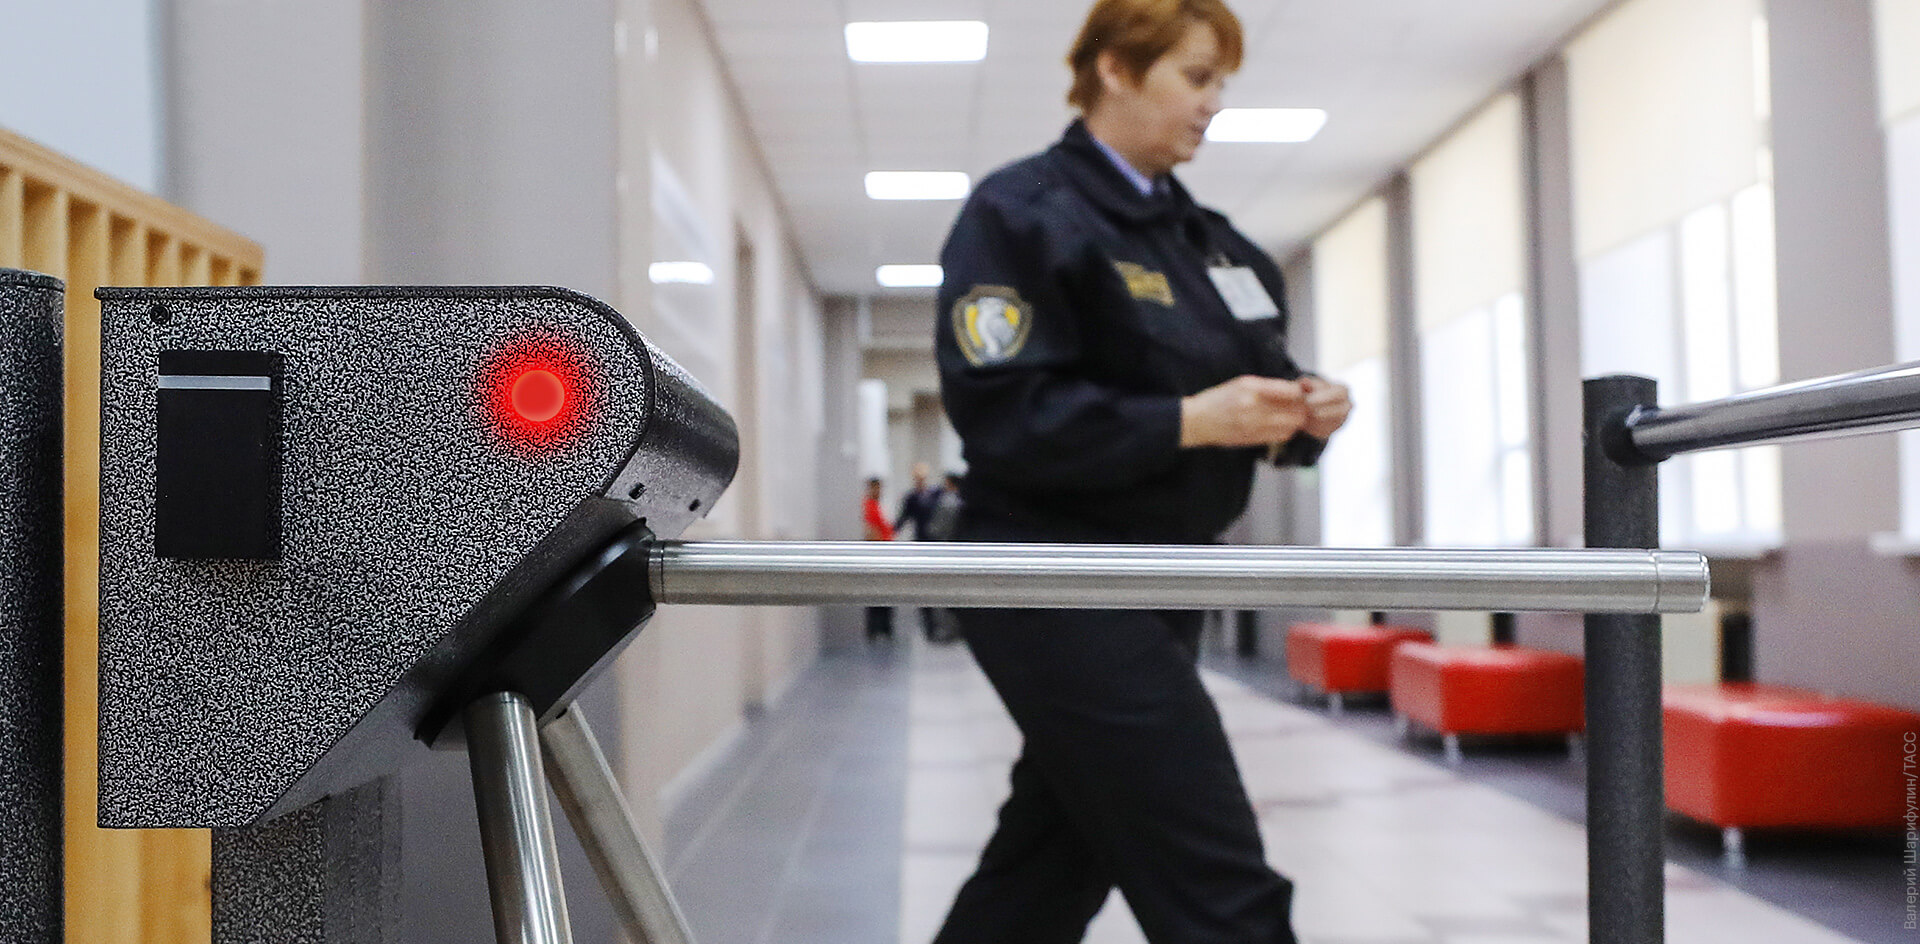 Регионы после казанской трагедии меняют требования к безопасности в школах